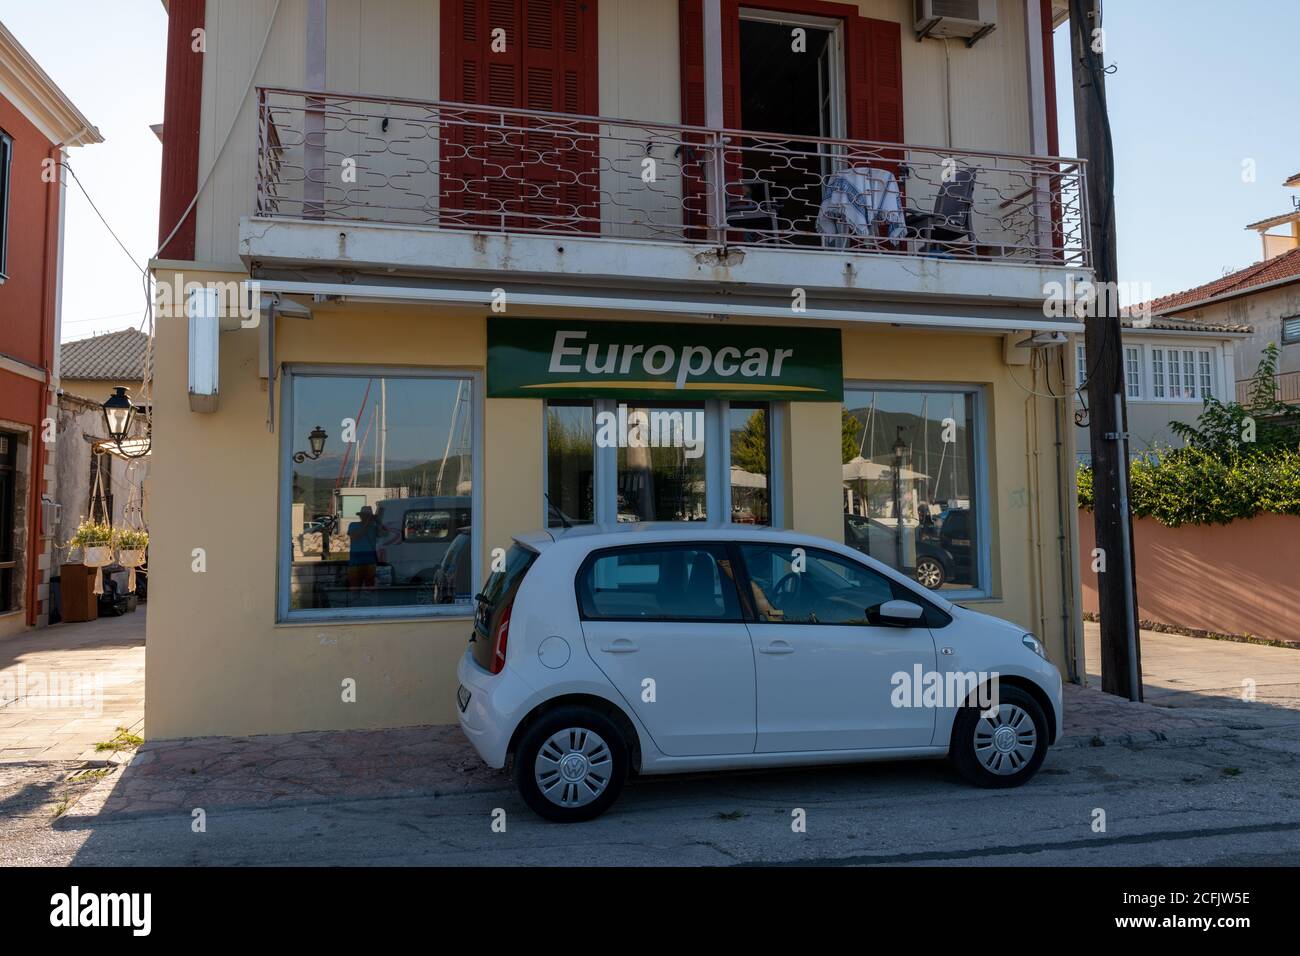 Una filiale di Europcar nella città di Lefkada, una multinazionale di autonoleggio. Foto Stock